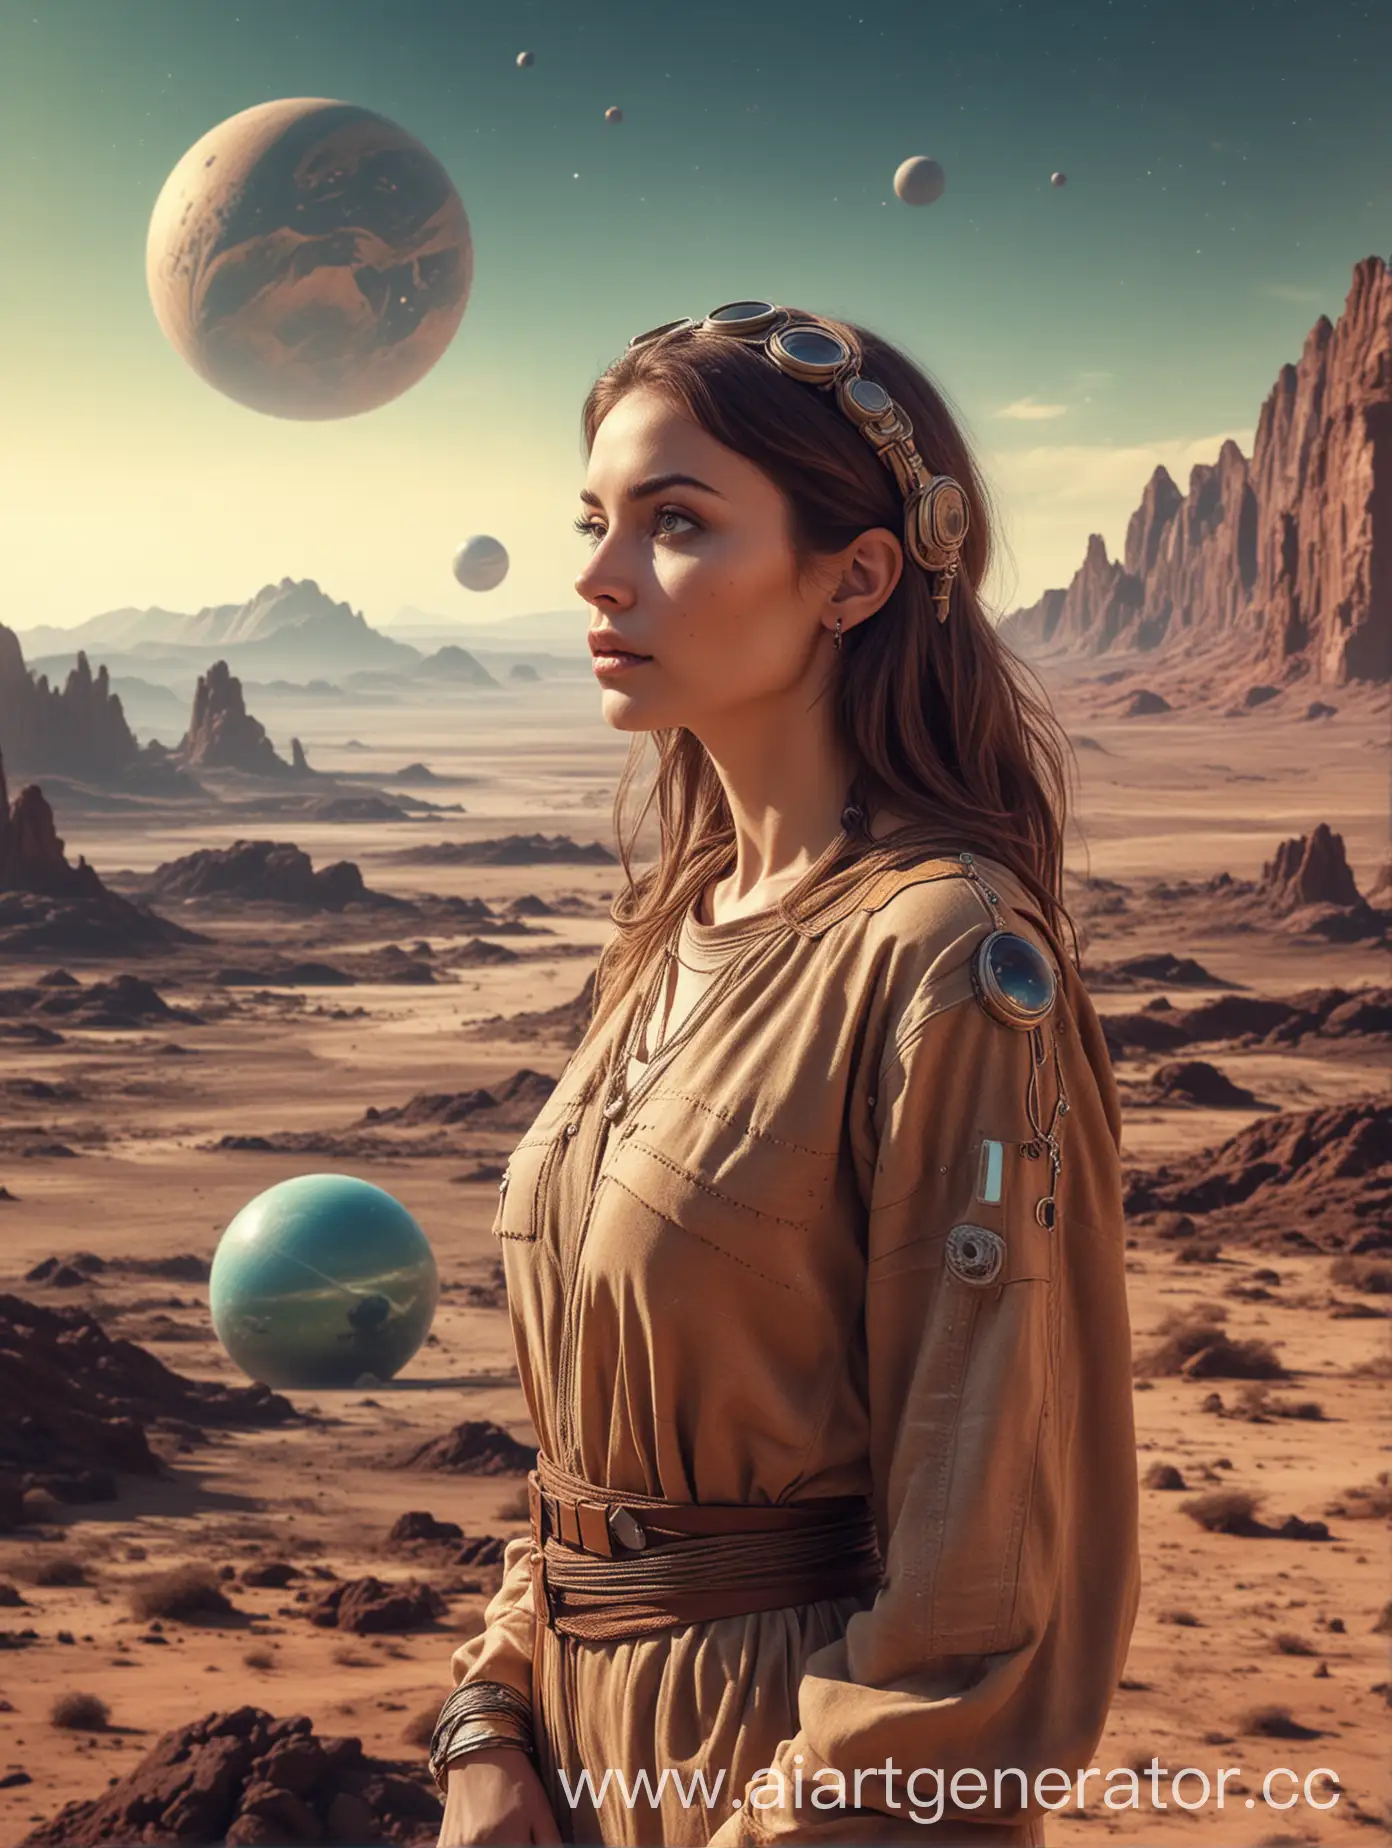 sci-fi винтажный дизайн, красивая женщина на чужой планете смотрит в даль, пустынный пейзаж на фоне небольшая планета, девушка в одежде стиля 80-х хиппи 